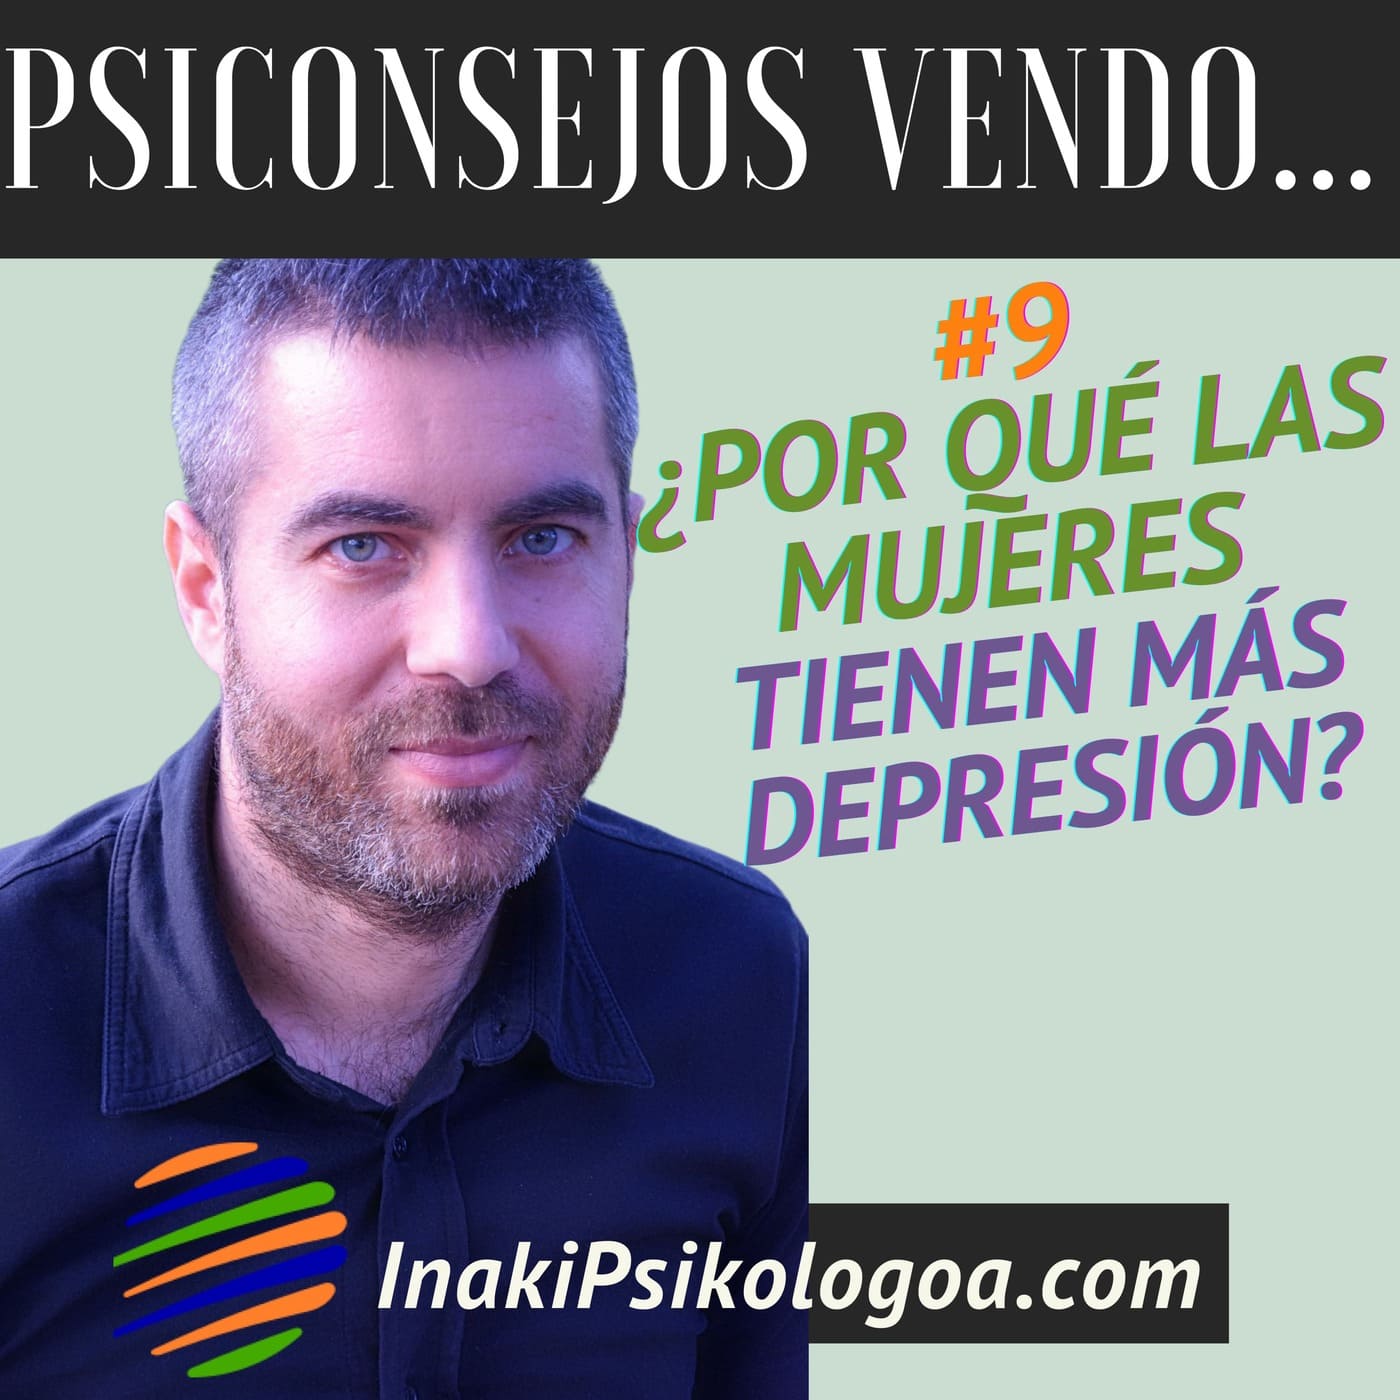 ¿Por qué las mujeres tienen más depresión? – EP9